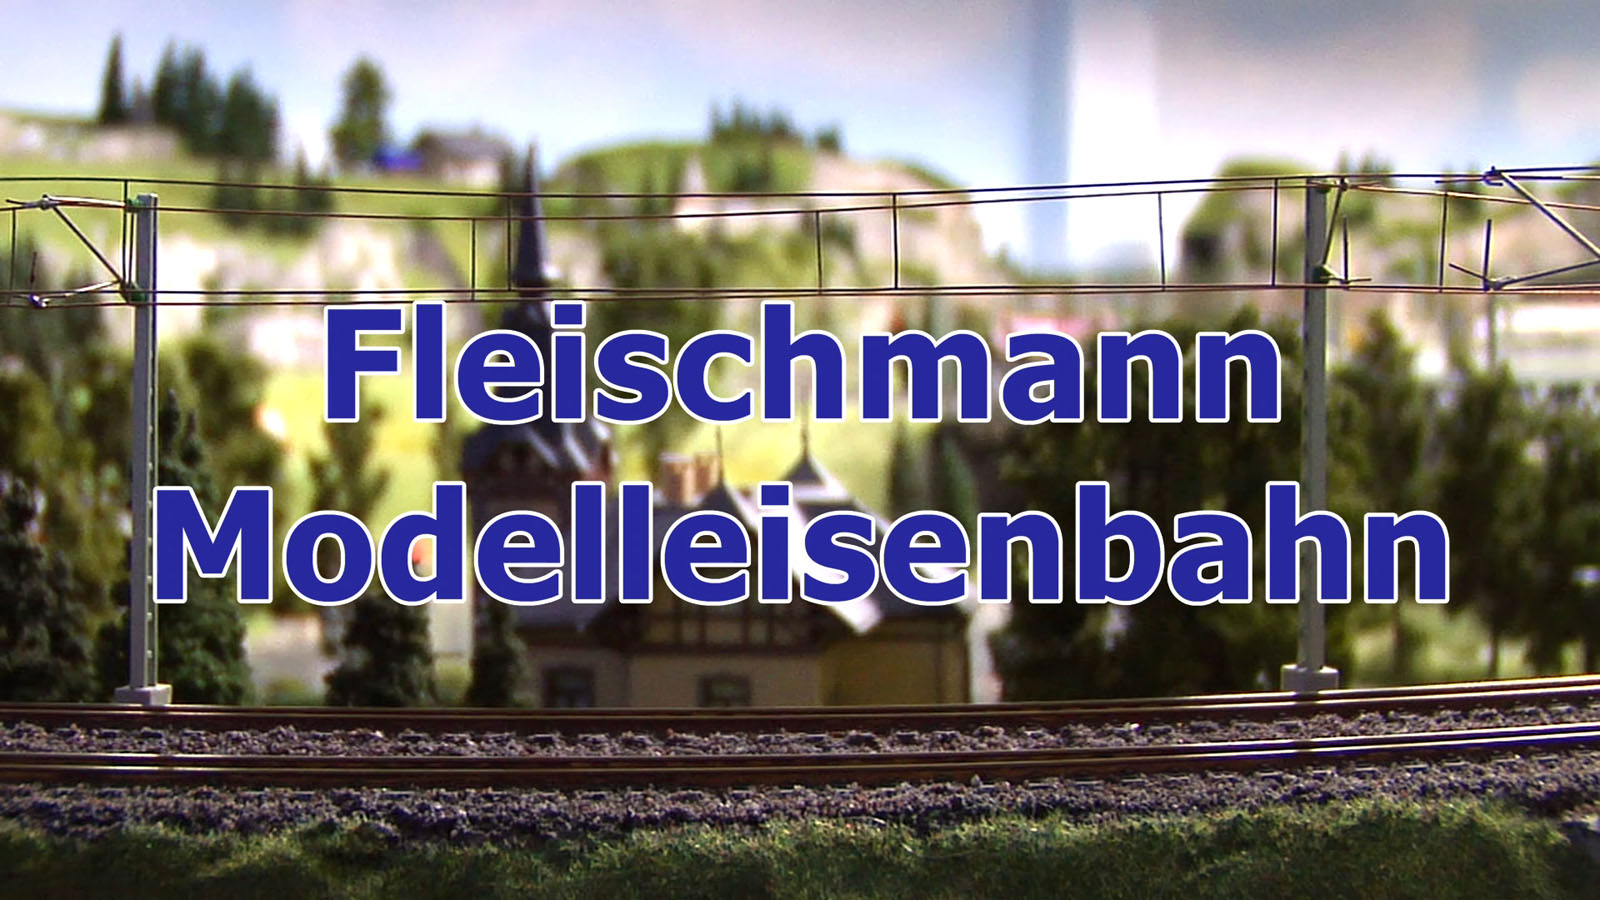 Fleischmann Modelleisenbahn - Eine von Bernhard Steins schönsten Modellbahnanlagen und Dioramen